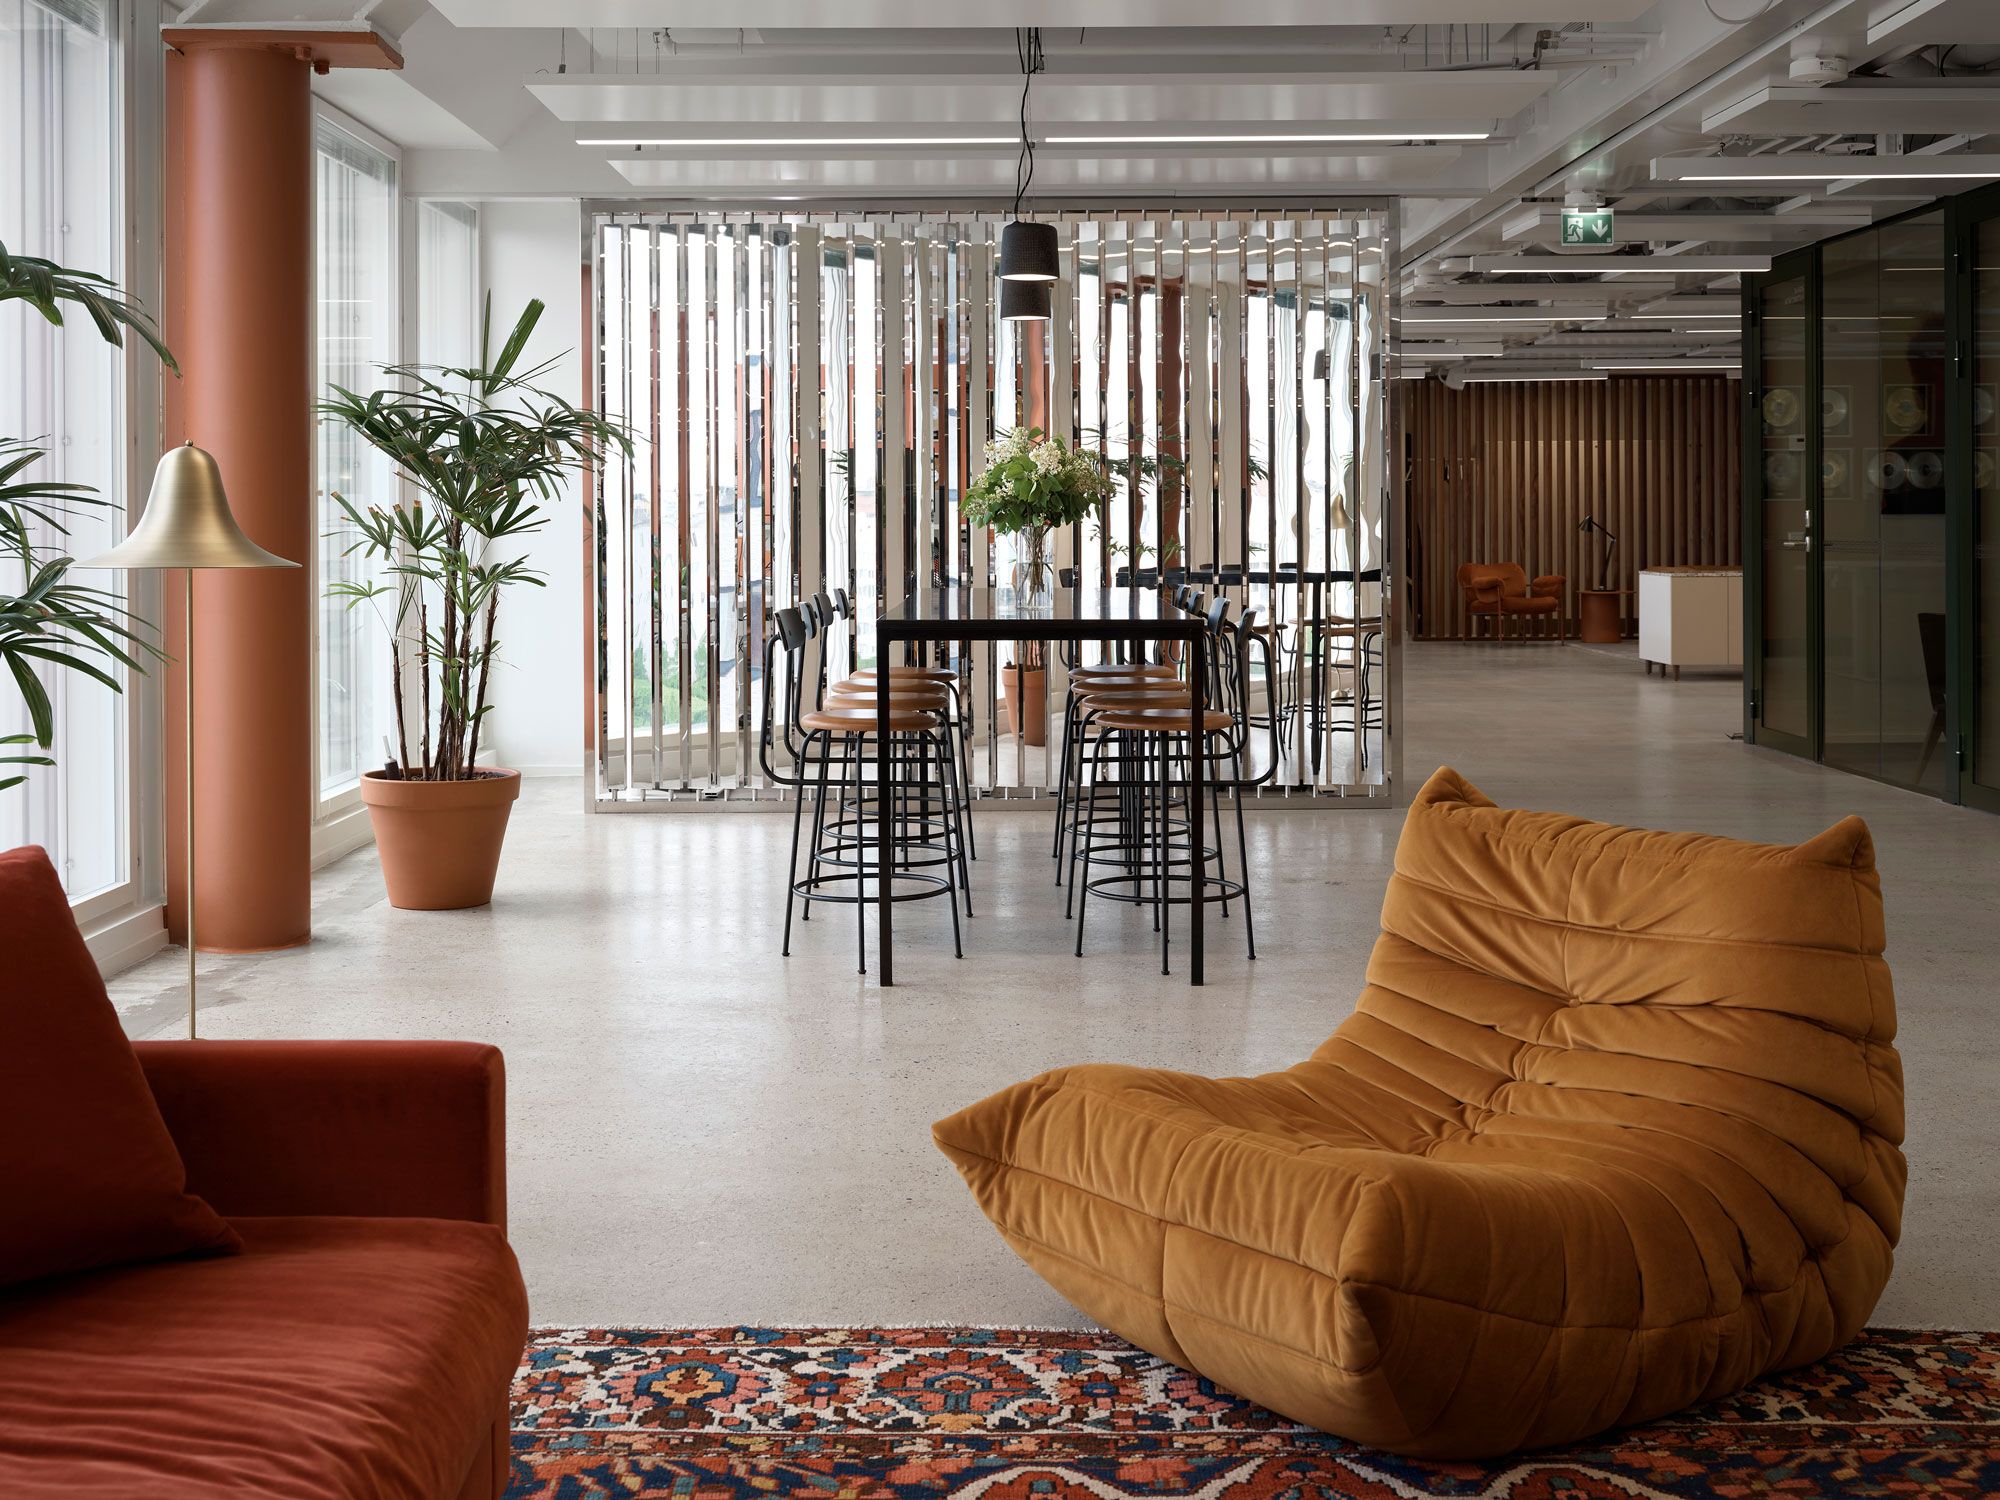 图片[2]|环球音乐芬兰办事处-赫尔辛基|ART-Arrakis | 建筑室内设计的创新与灵感